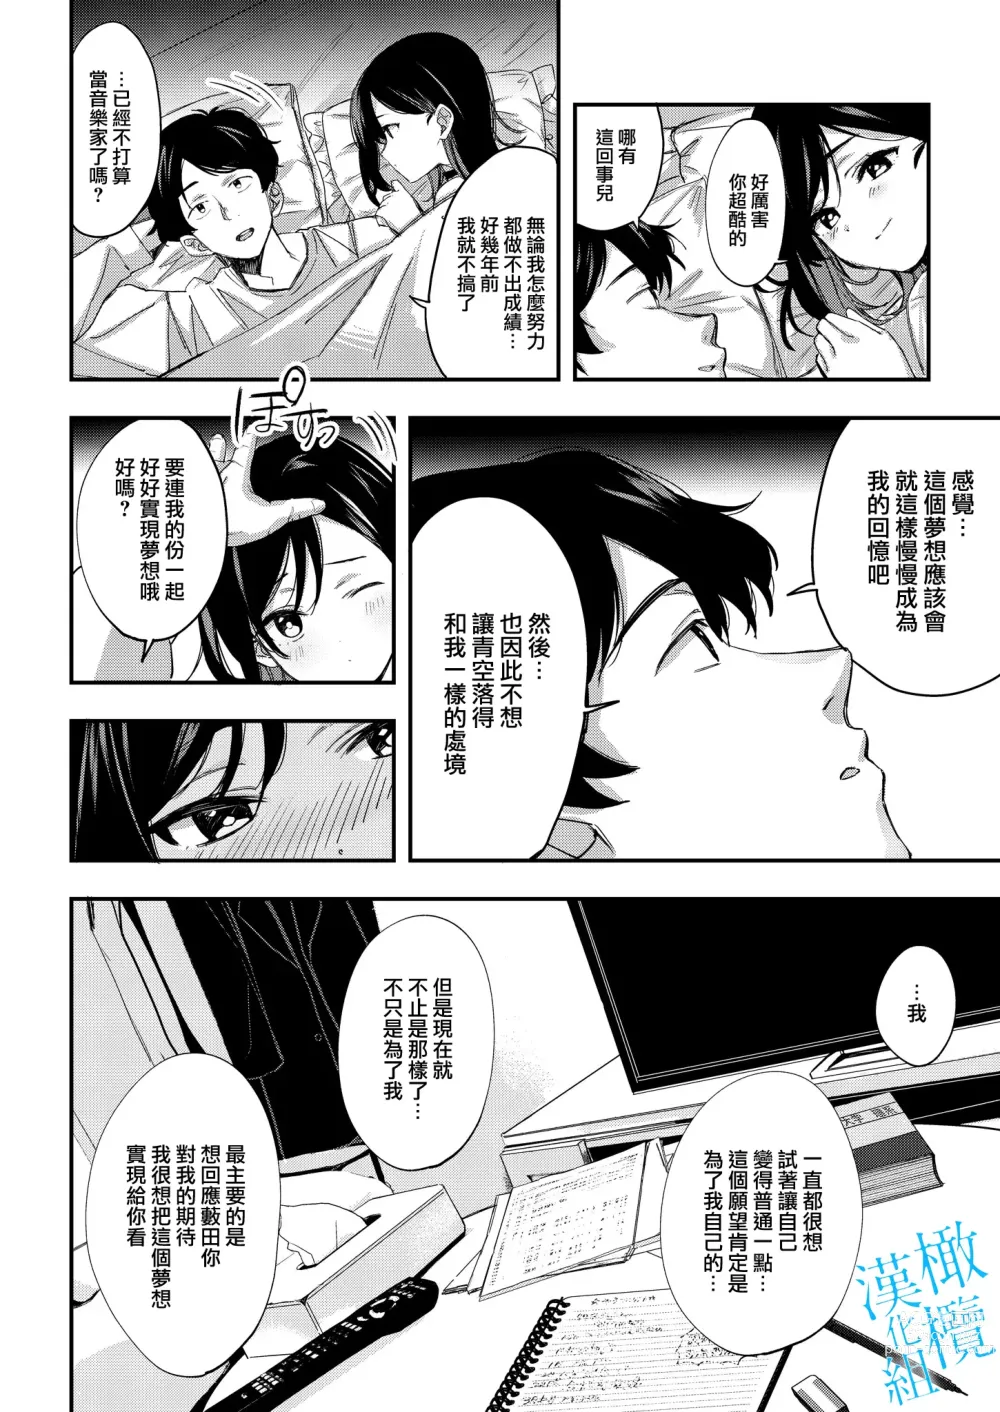 Page 26 of doujinshi 于夜晚绽放的青空